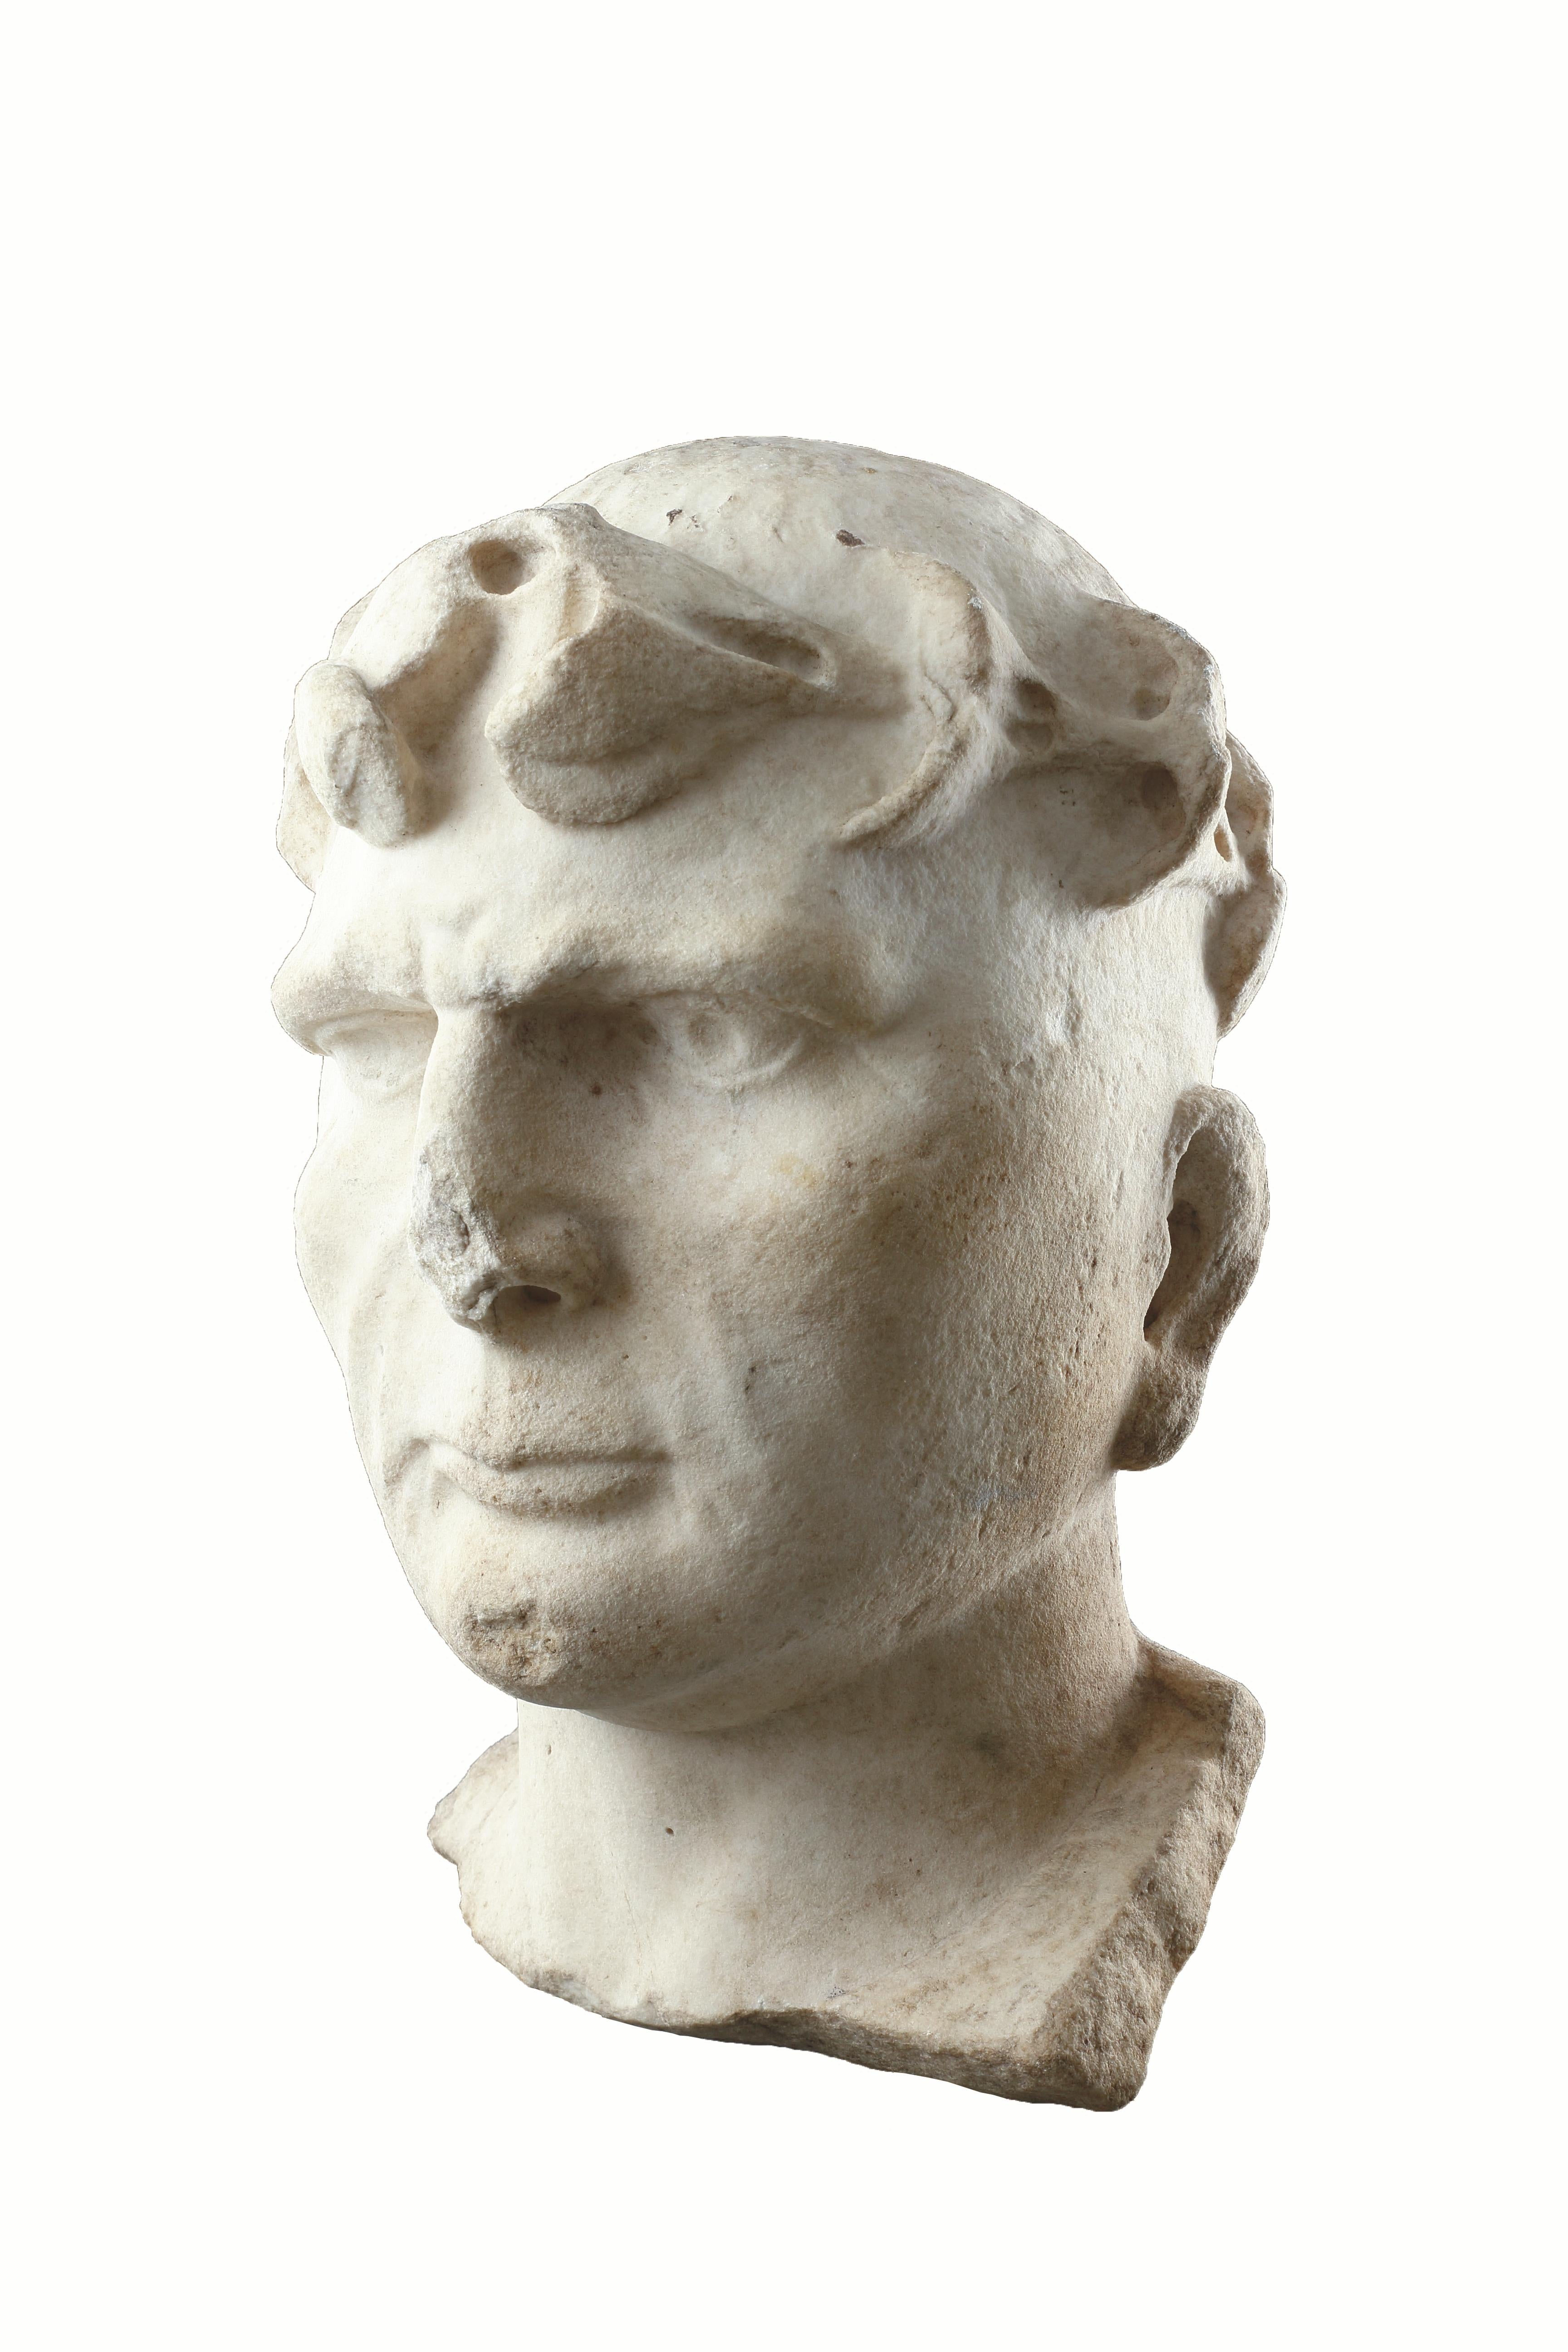 Tête de Constantin le Grand (A.I.C. - 337), portrait d'homme romain, grandeur nature. 
Portant la 